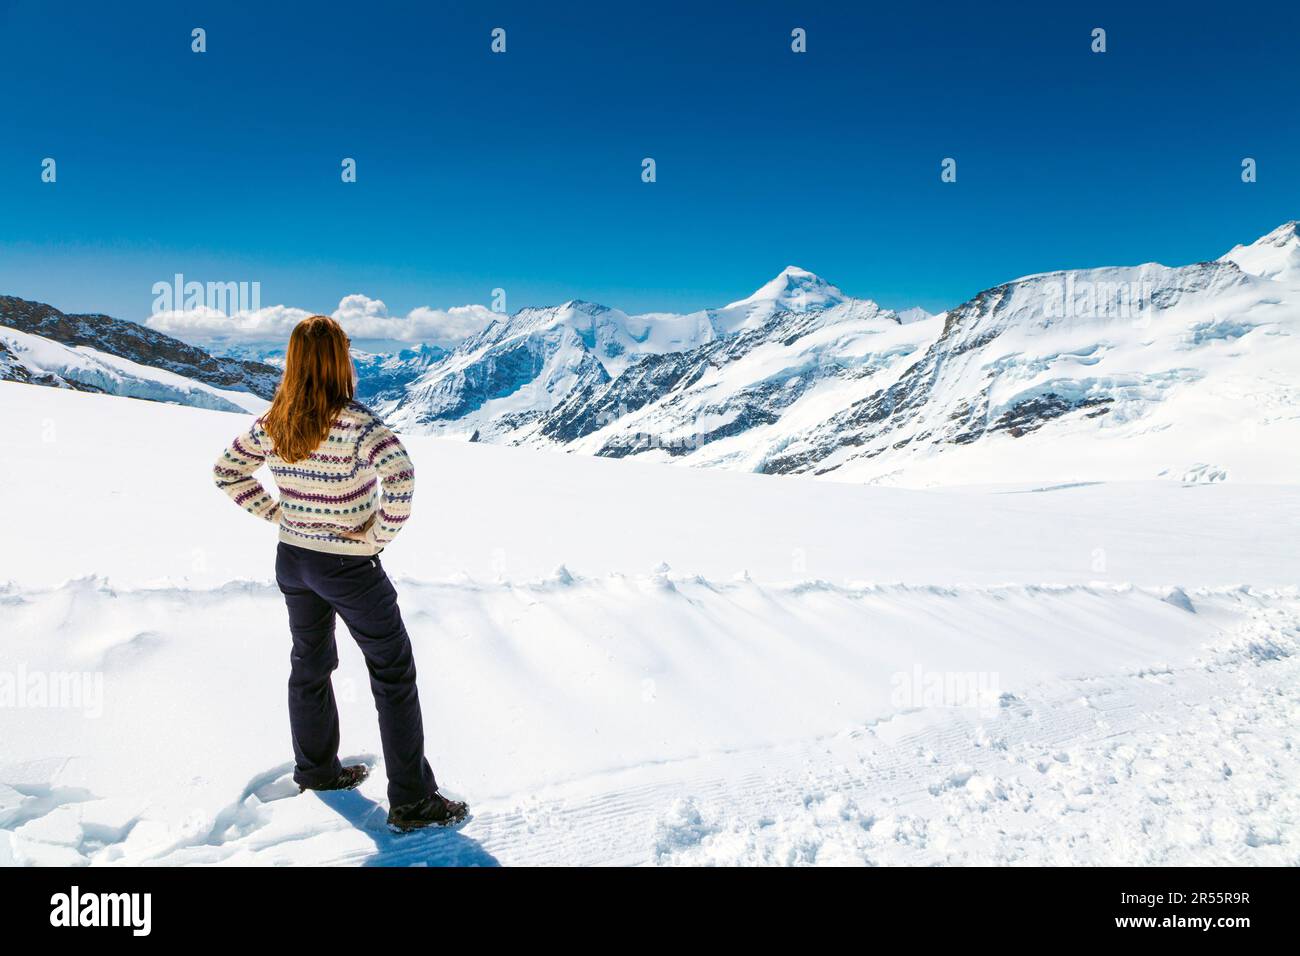 Femme regardant la vue panoramique sur la montagne et le glacier d'Aletsch, le sentier de randonnée du sommet de la Jungfrau à la cabane Mönchsjoch, Alpes suisses, Suisse Banque D'Images